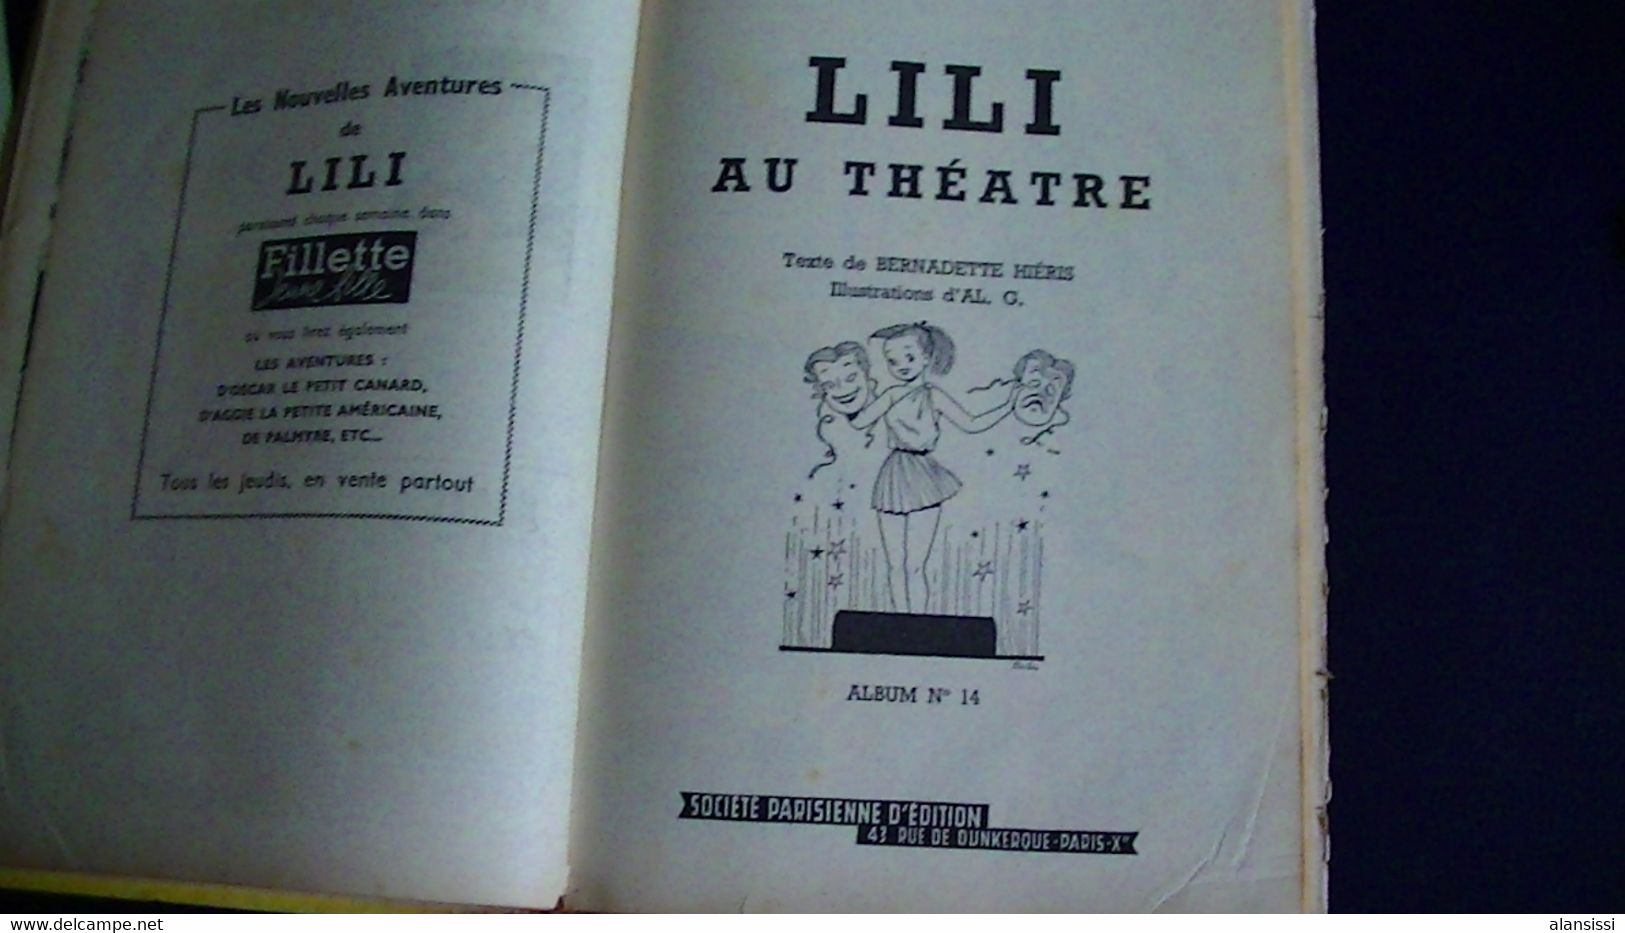 L'espiègle LILI Album 4 histoires N°13 Lili chasse les fauves  N°14 au théâtre N°15 au palace hôtel N° 16 Lili et Cie